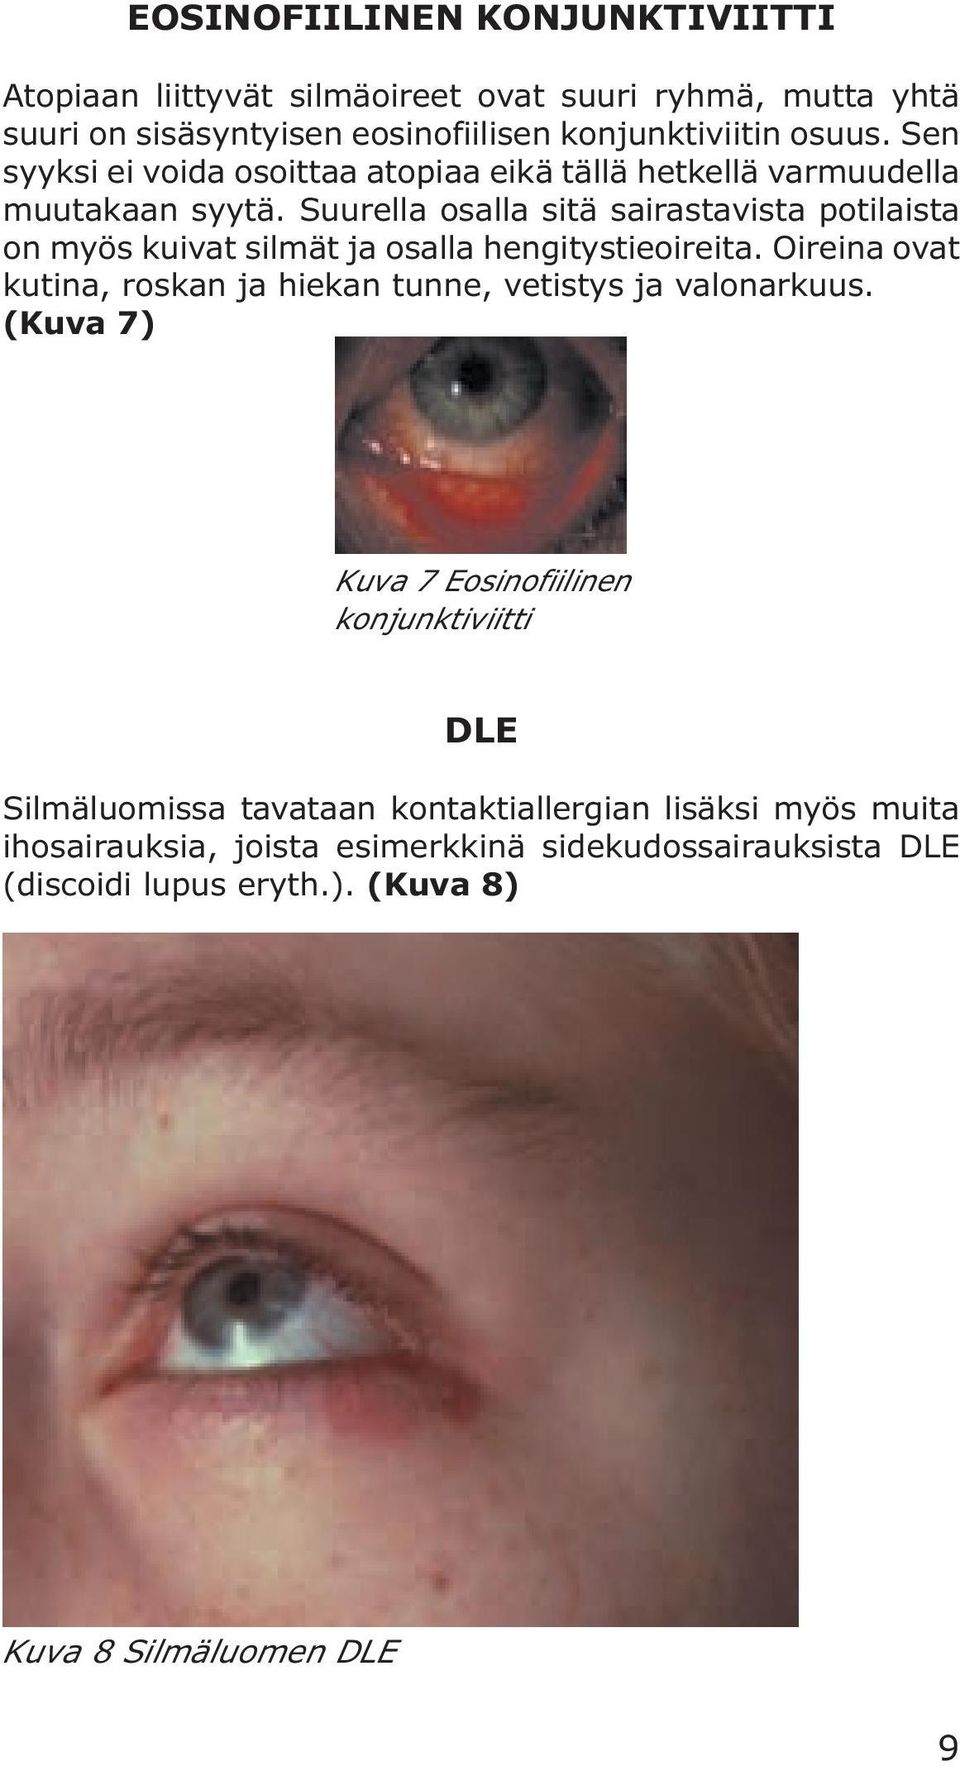 Suurella osalla sitä sairastavista potilaista on myös kuivat silmät ja osalla hengitystieoireita.